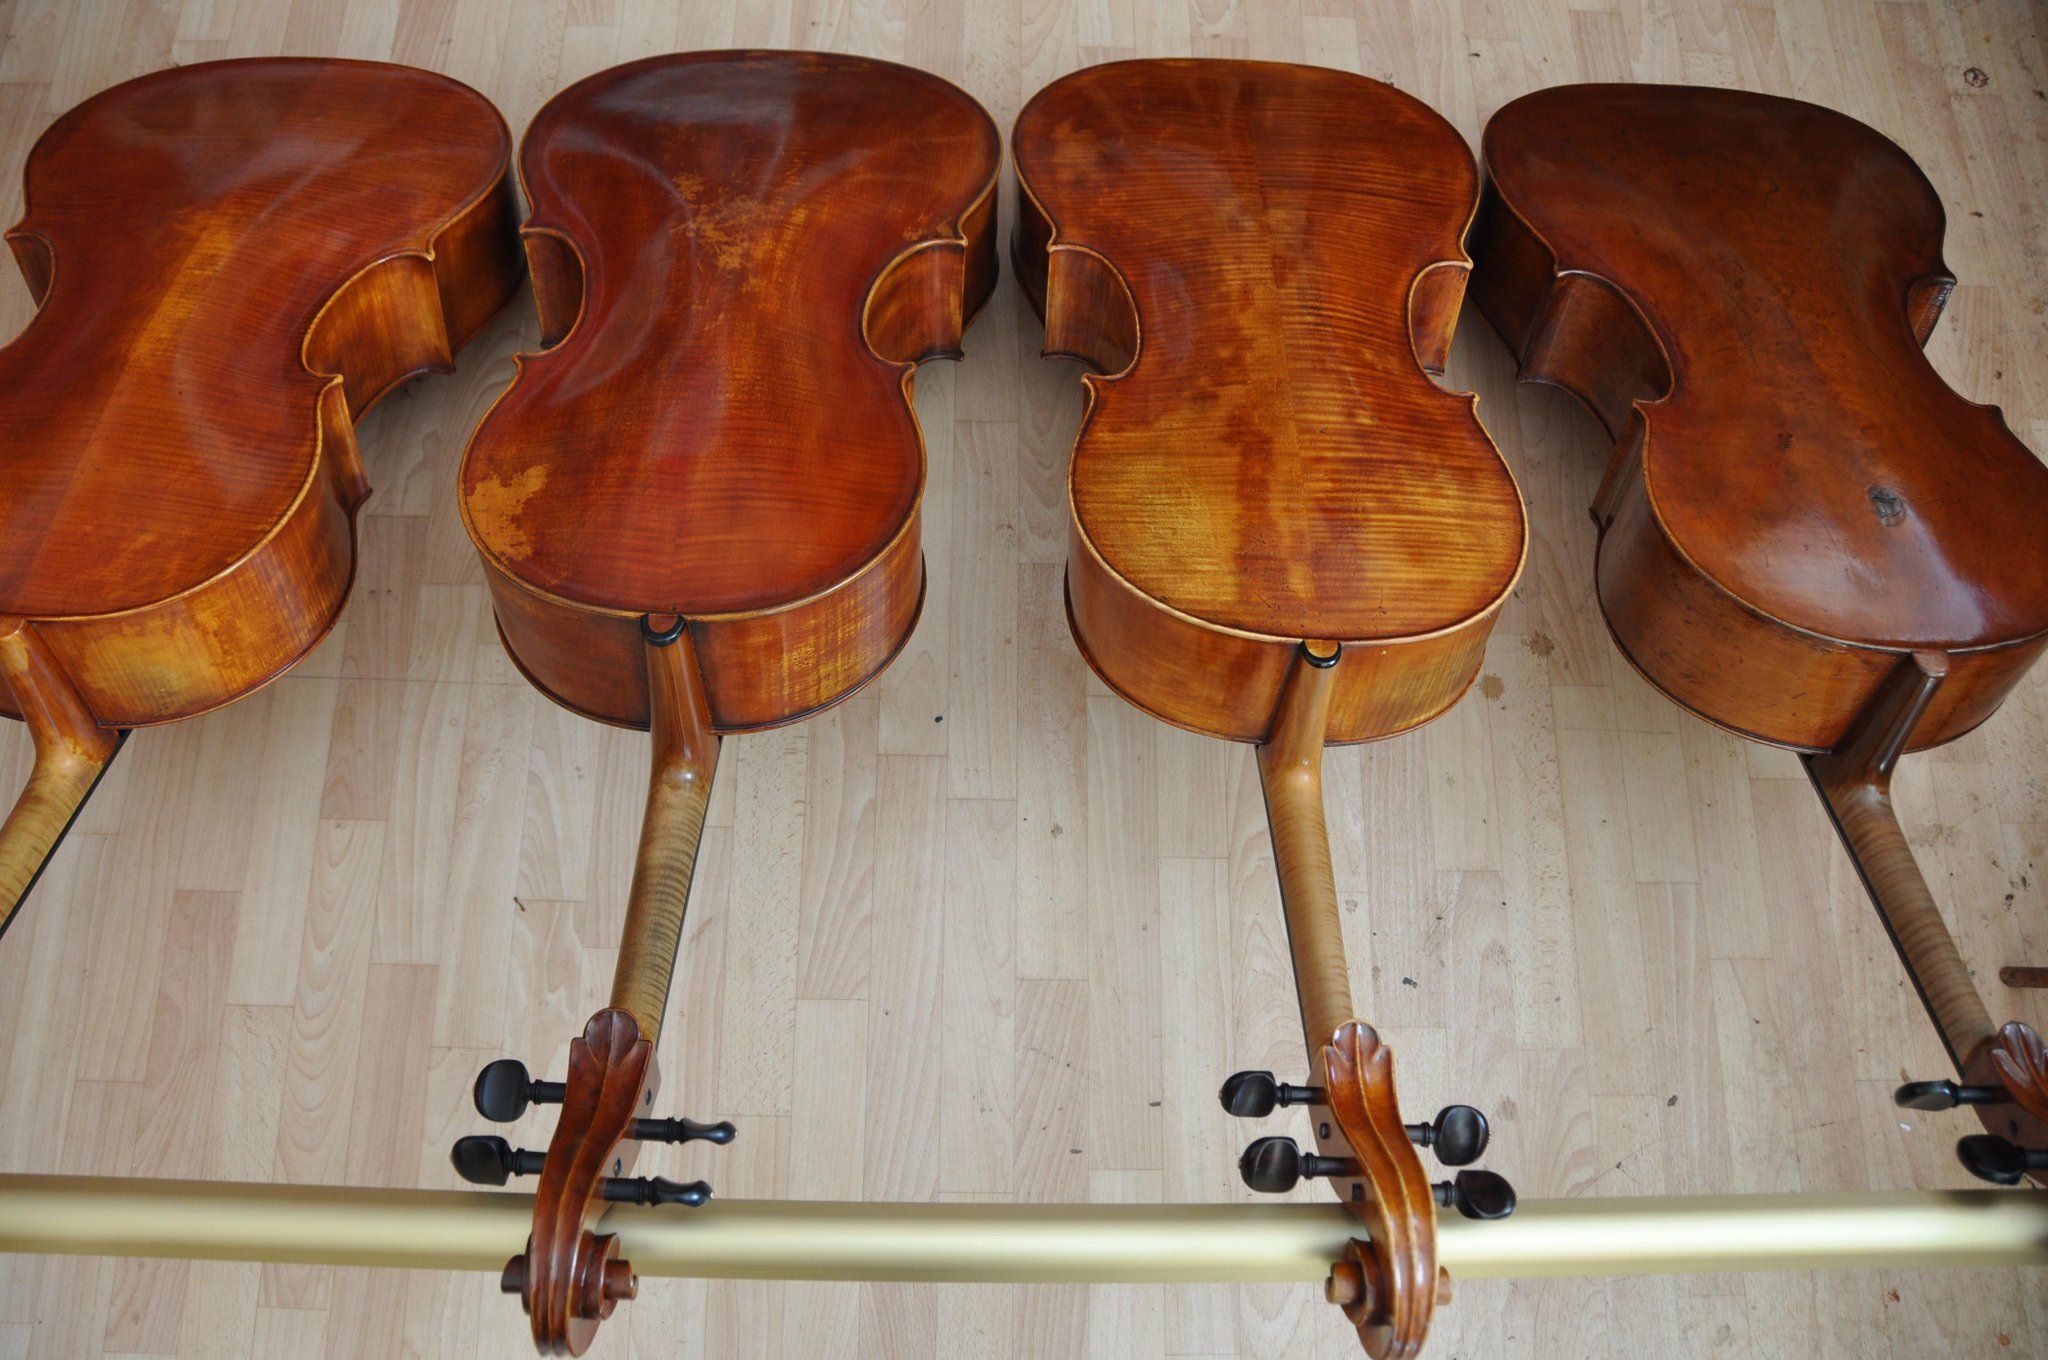 Hansell Violins på Twitte